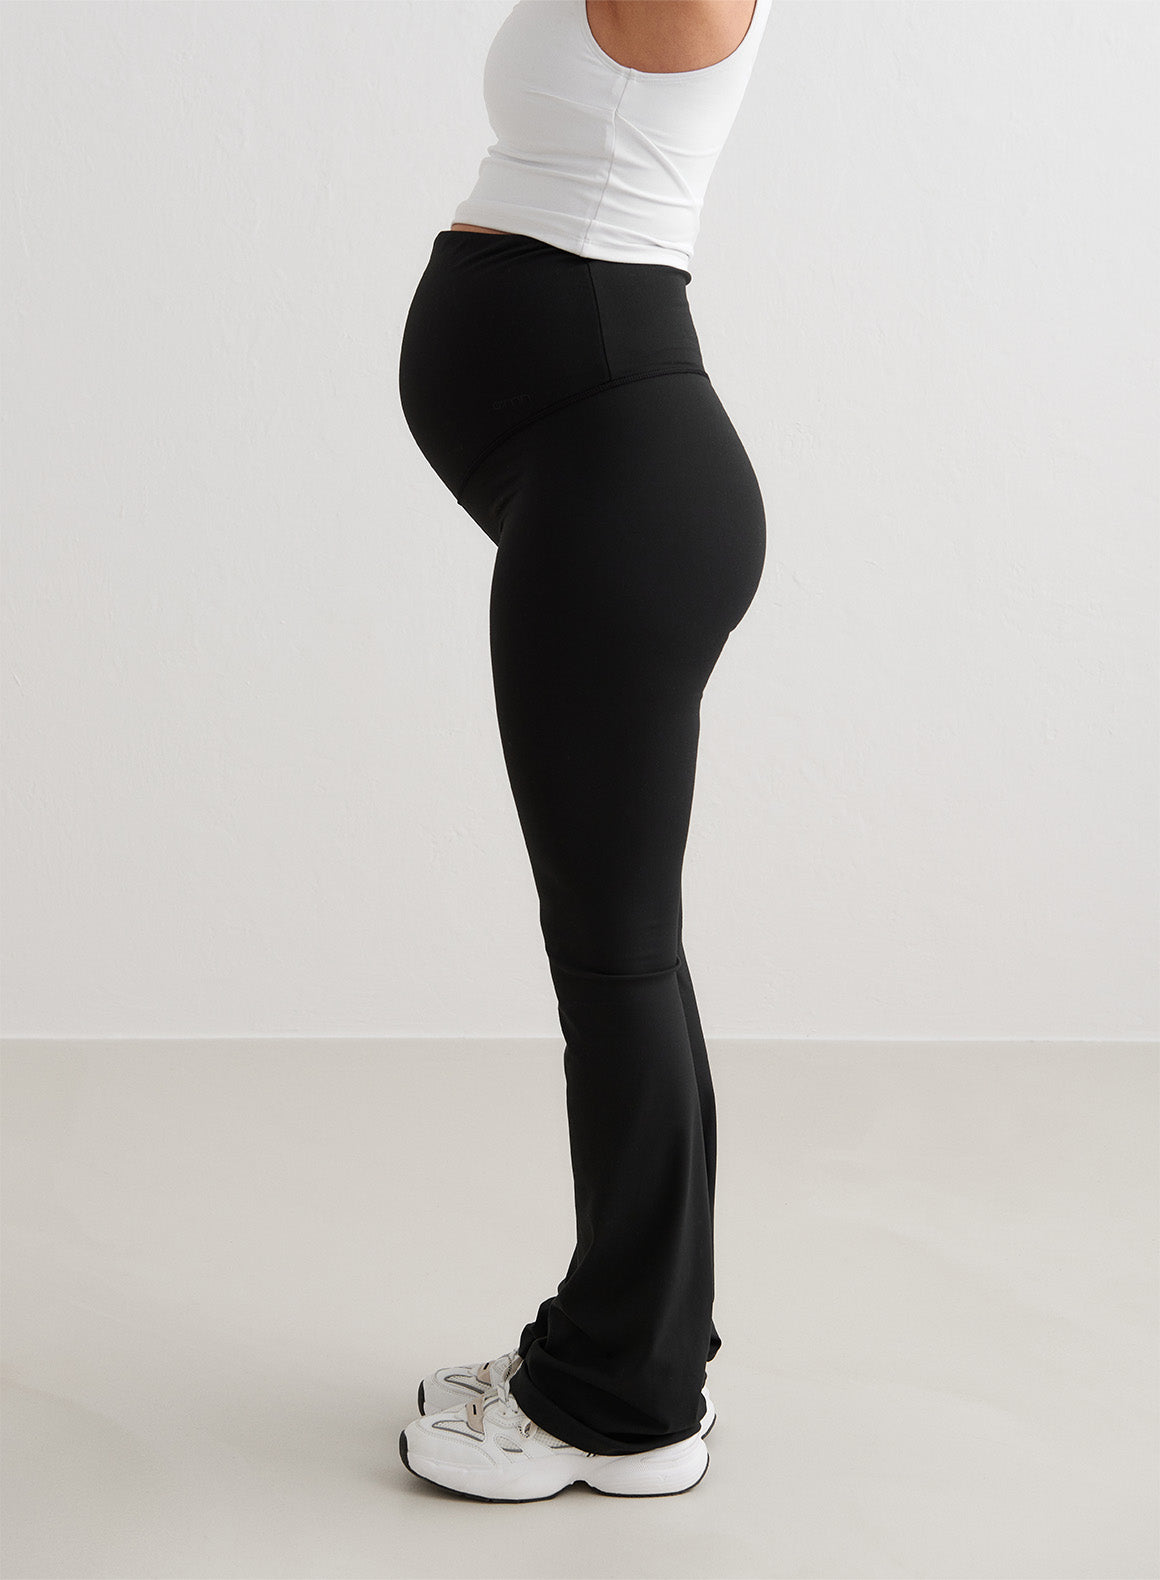 Maternity Leggings for Pregnant Women Yoga Flared High-waisted